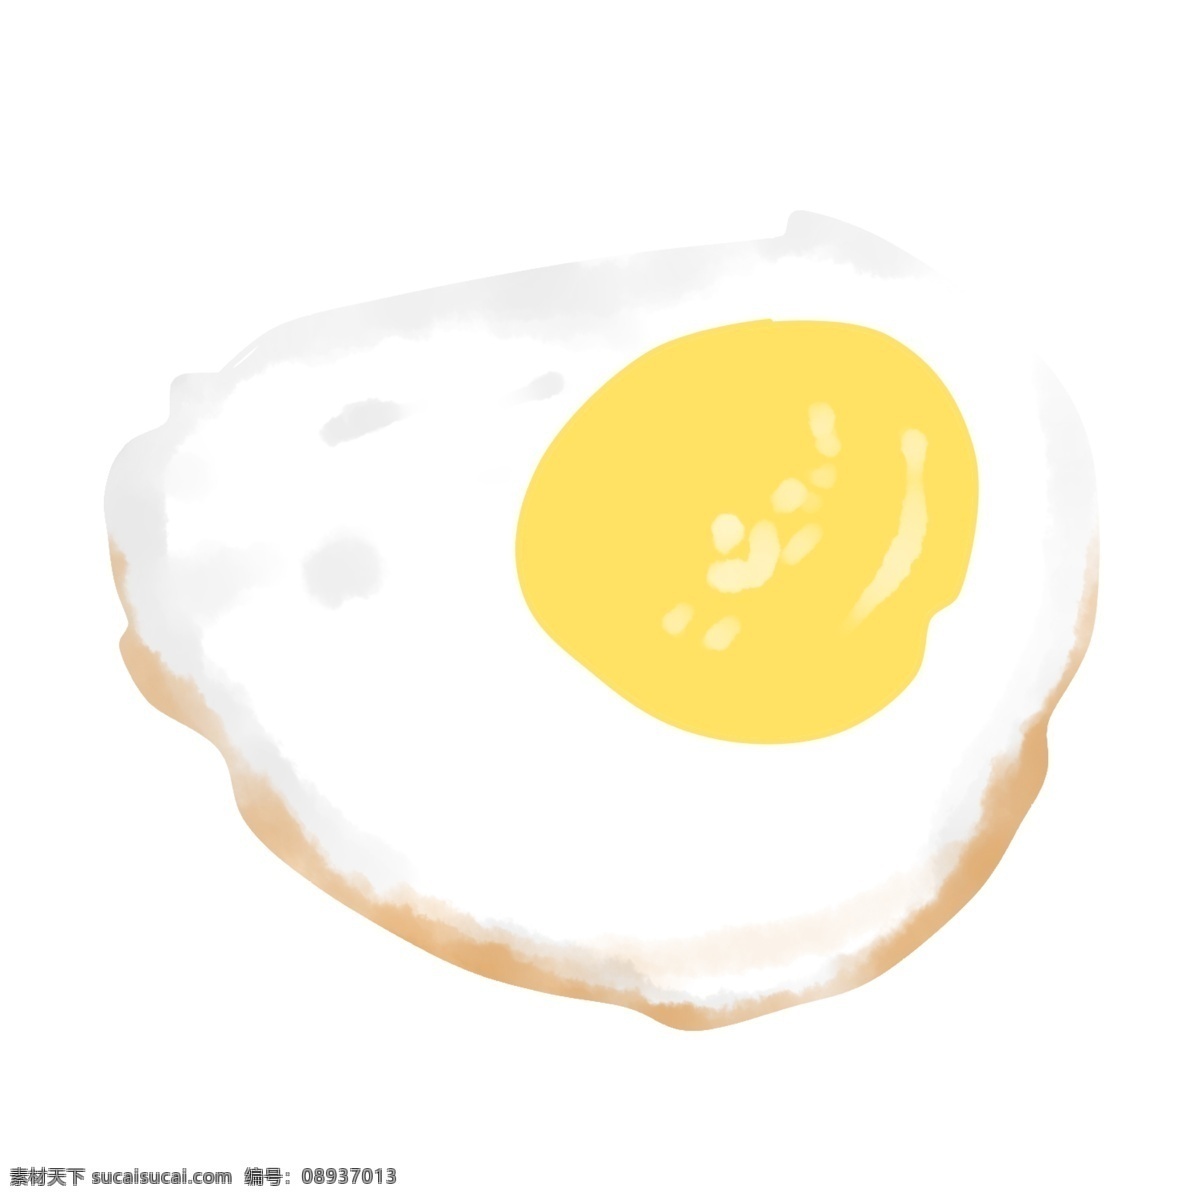 美食 食品 煎蛋 卡通 黄白 写实 可爱 鸡蛋